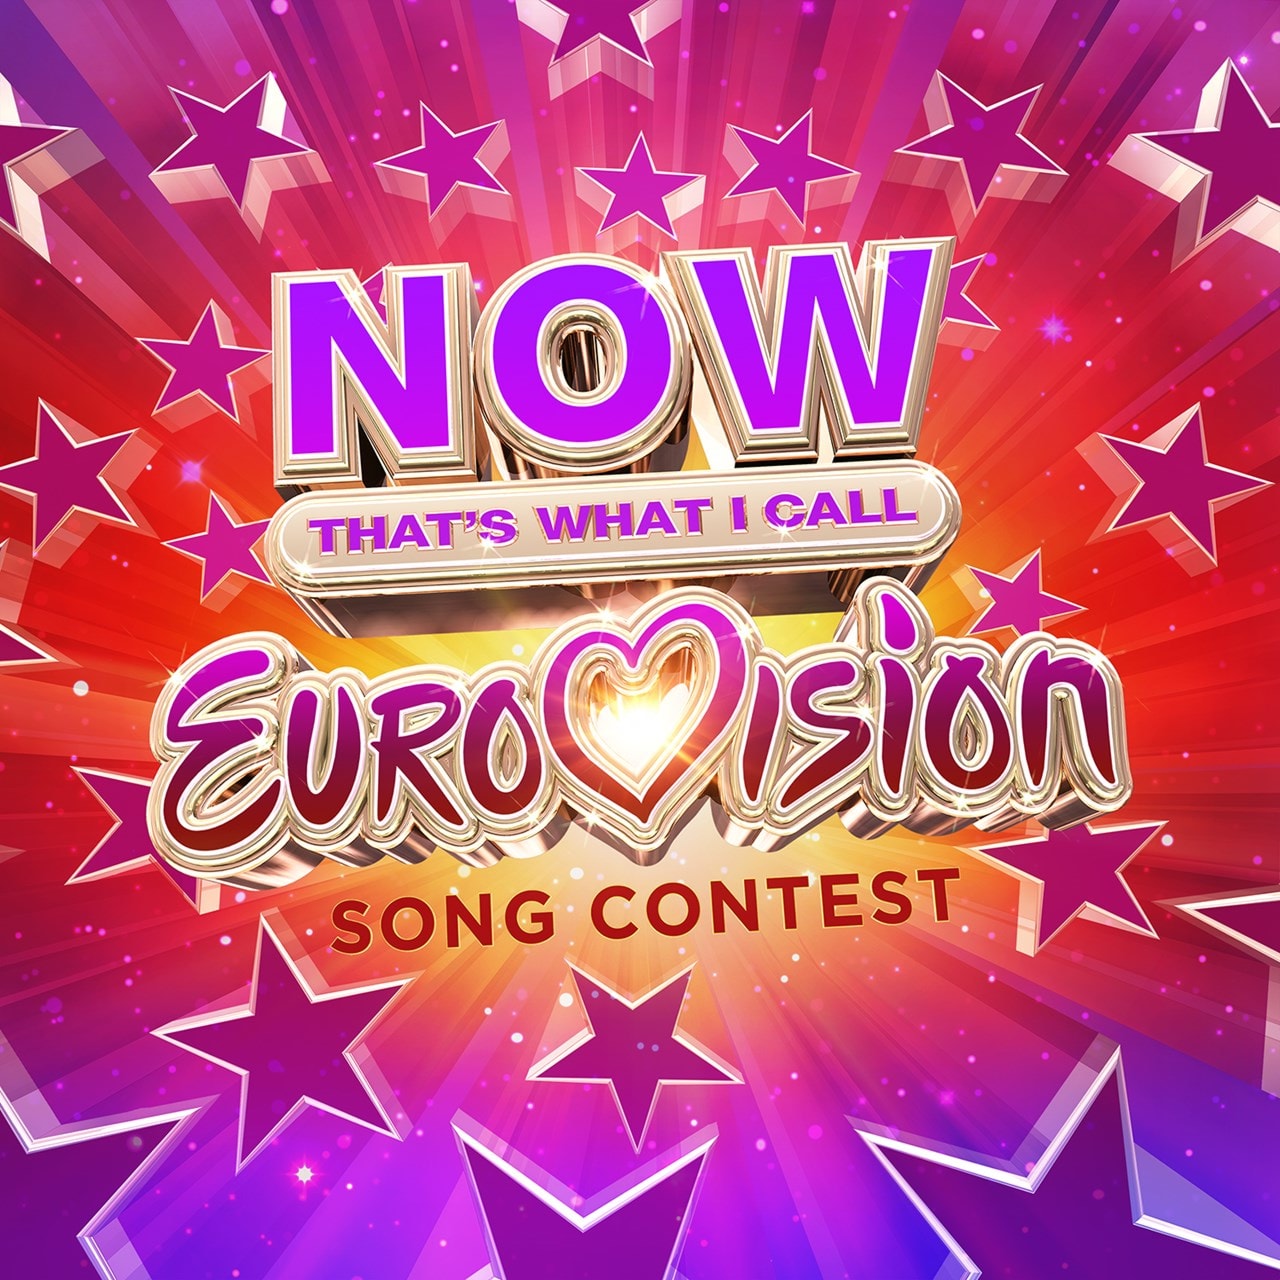 Sonia Eurovision. 84 треки